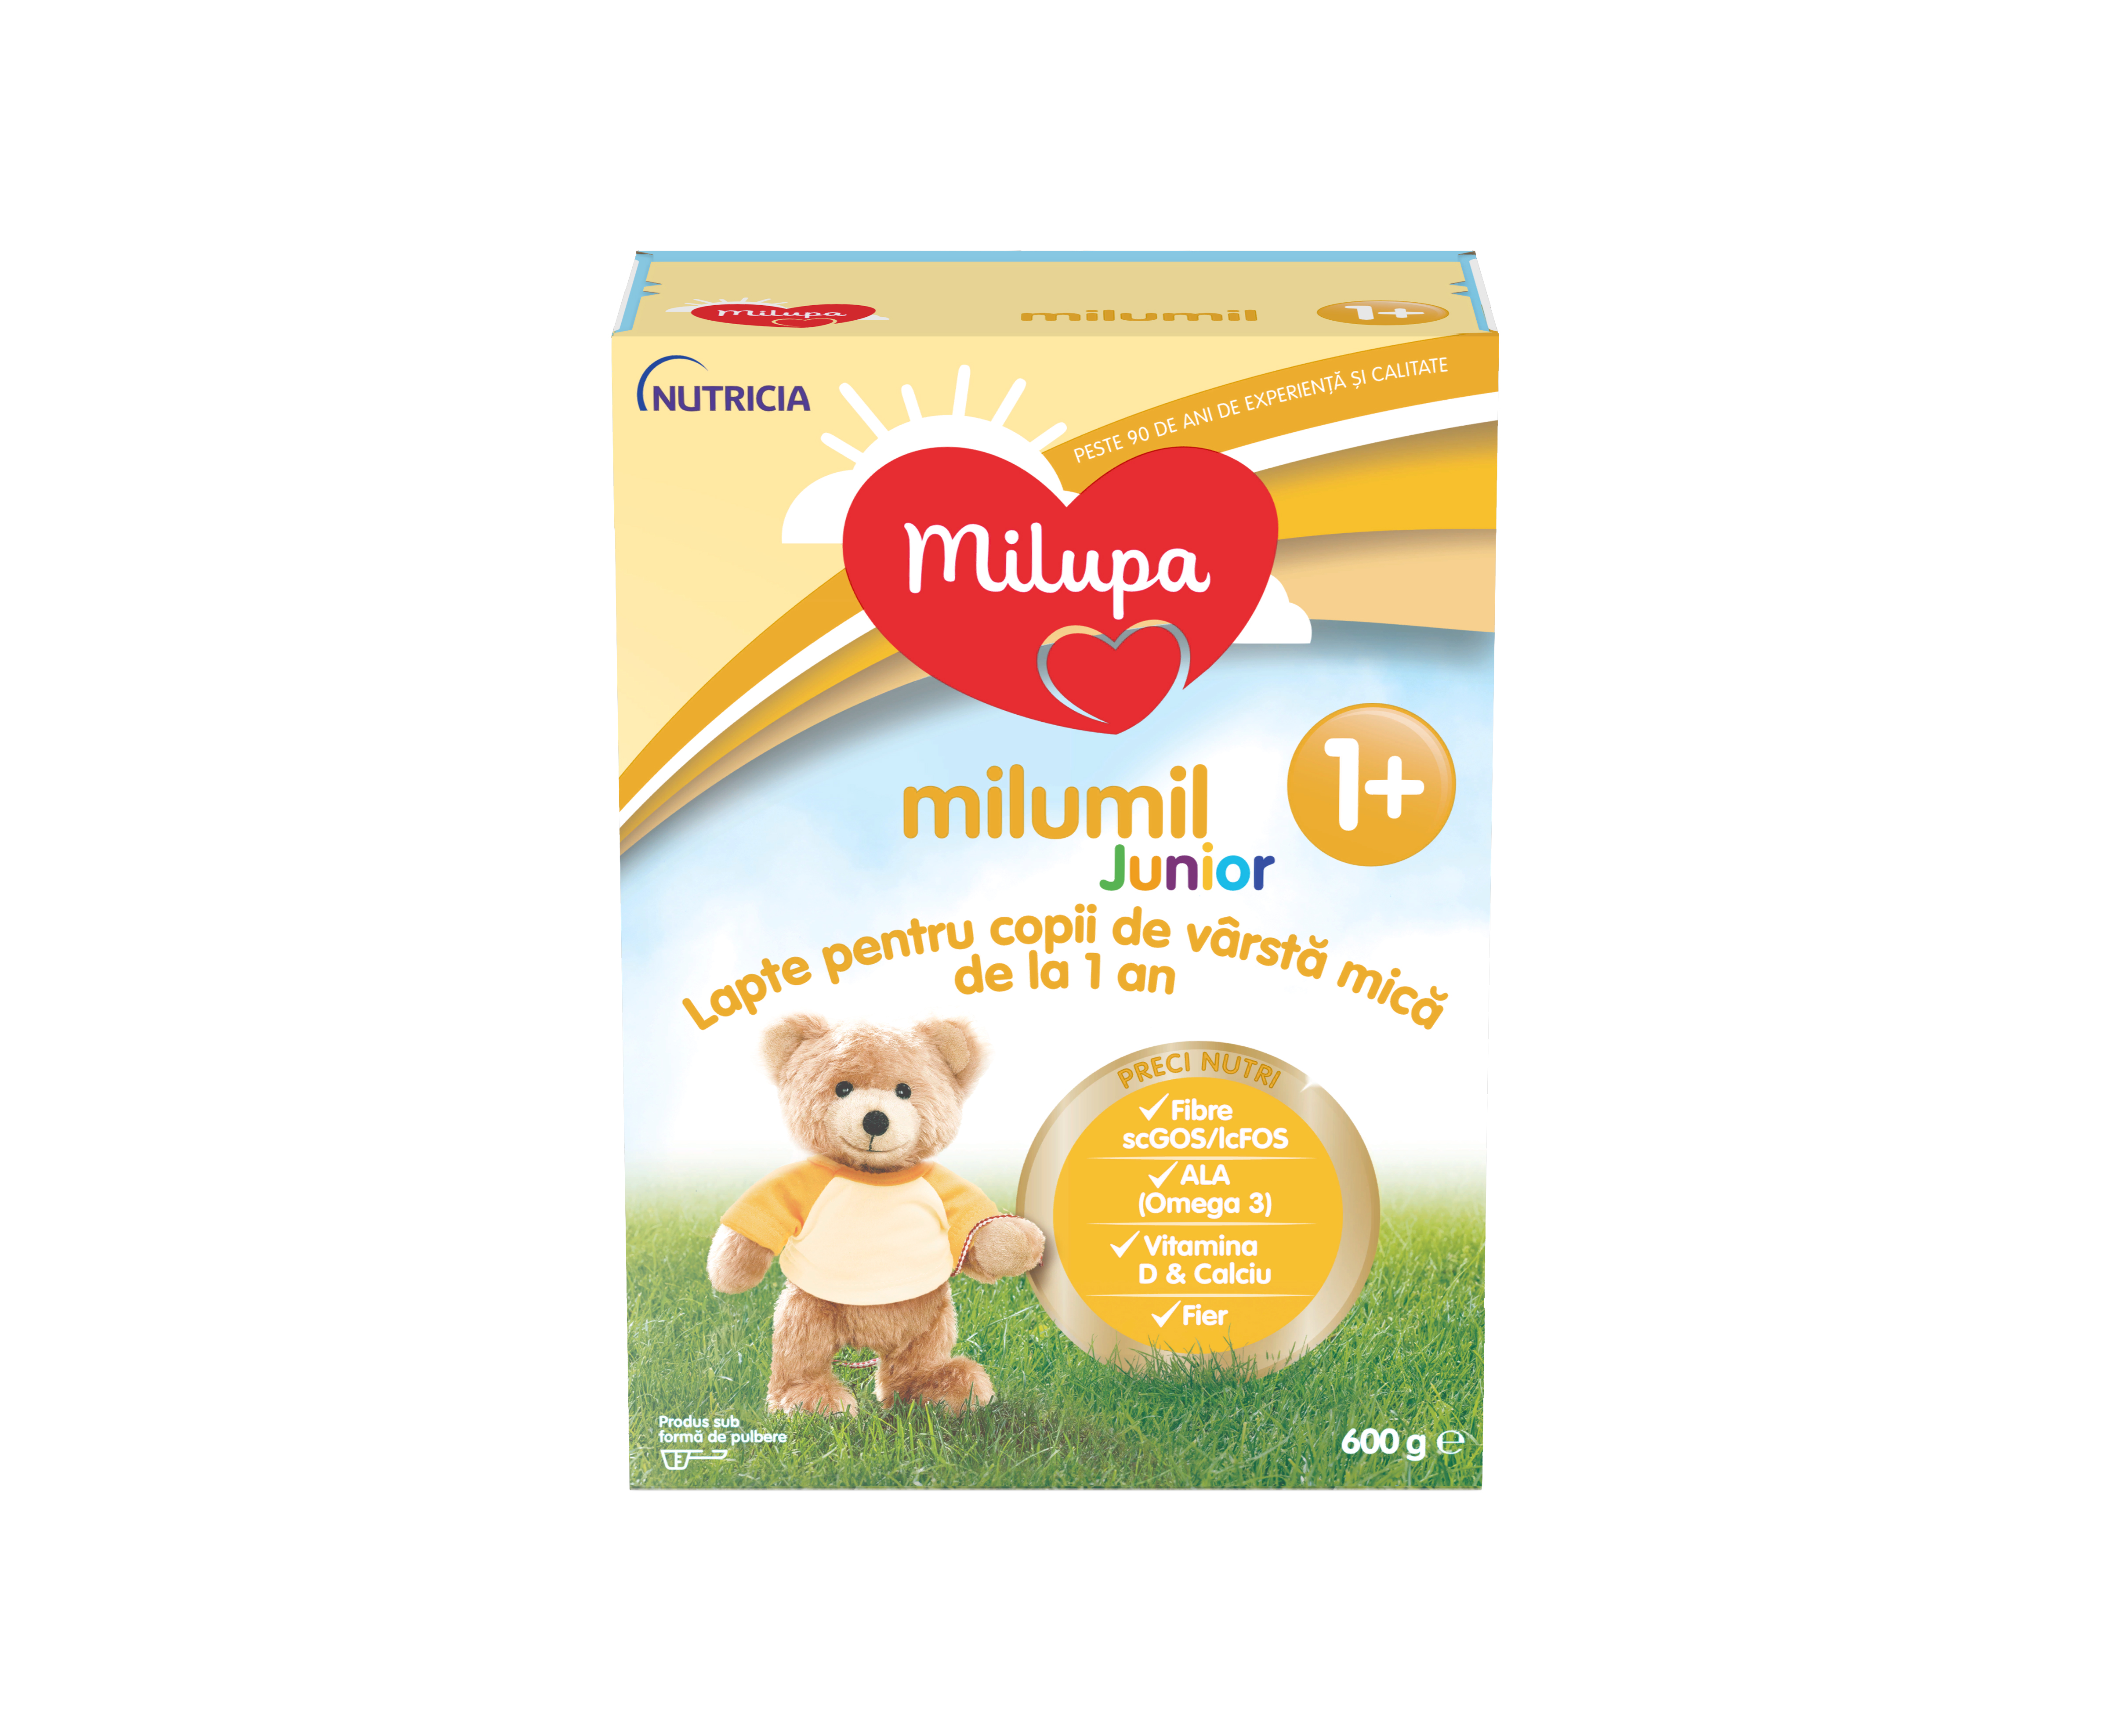 Formule de lapte praf - Milupa Milumil Junior 1+, lapte praf de la 1 an, 600 grame, medik-on.ro